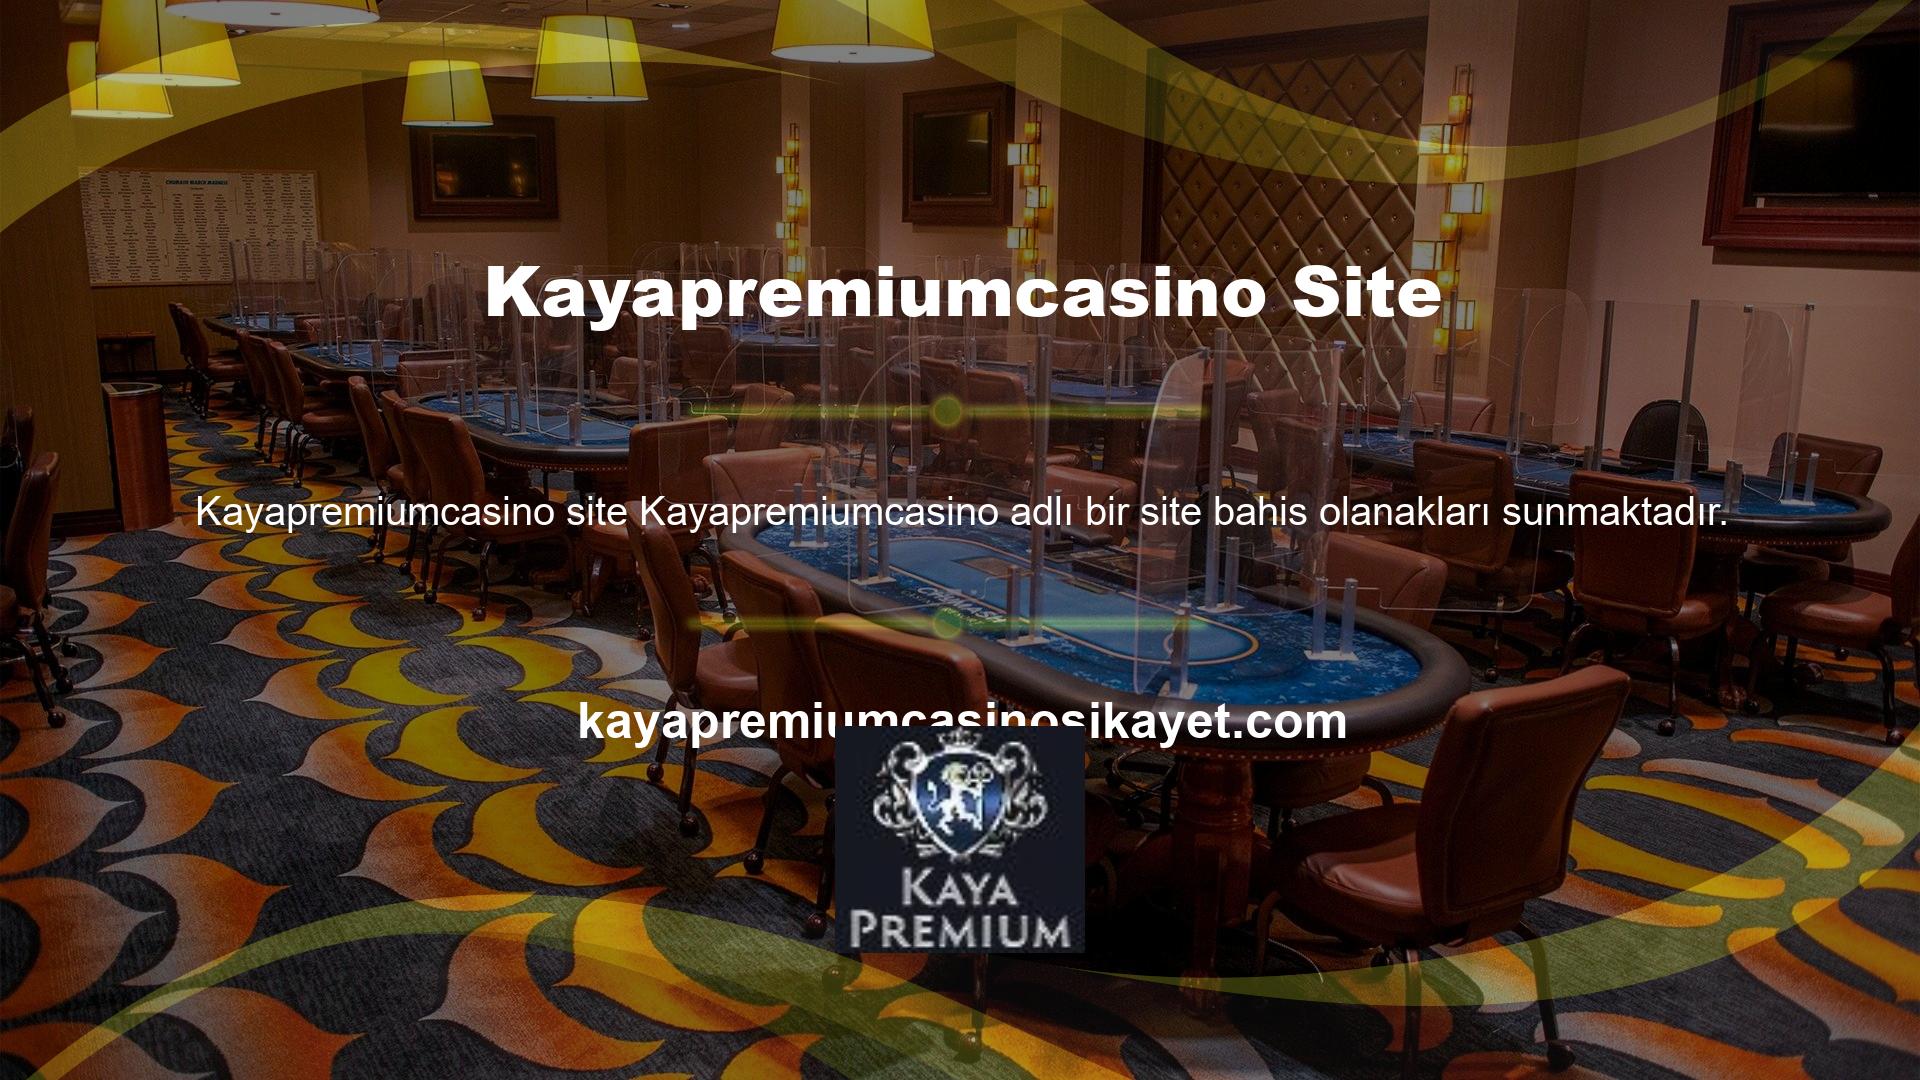 Yabancı casino siteleri yasa dışı kabul edilen sitelerdir